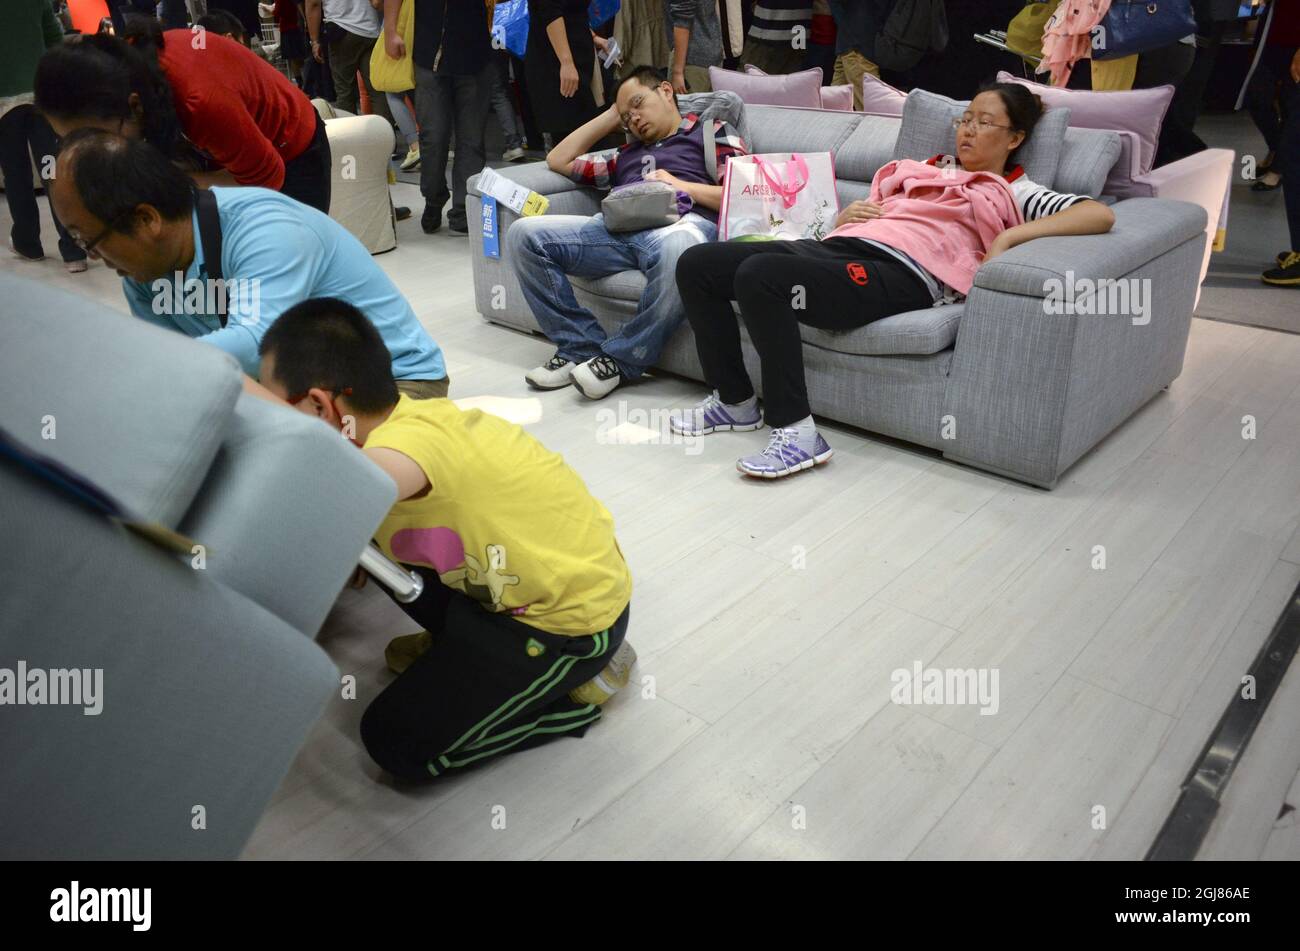 KINA 2013-09-27 clients dans un magasin de meubles IKEA en Chine septembre 2013. Les clients qui s'endorment dans les lits et les canapés d'IKEA ne sont pas inhabituels en Chine. Mais ce n'est pas un problème selon la direction d'IKEA - nous accueillons tous ceux qui veulent venir dans nos magasins. Tous nos visiteurs sont des clients potentiels, a déclaré Linda Xu, relations publiques pour le groupe Ikea en Chine, selon le journal Swediosh DN, Quting le Figaro. Depuis qu'Ikea s'est établi en Chine il y a 15 ans, le pays est devenu l'un de leurs marchés les plus importants. Près de 15 millions de personnes ont visité les 11 magasins de China la Banque D'Images